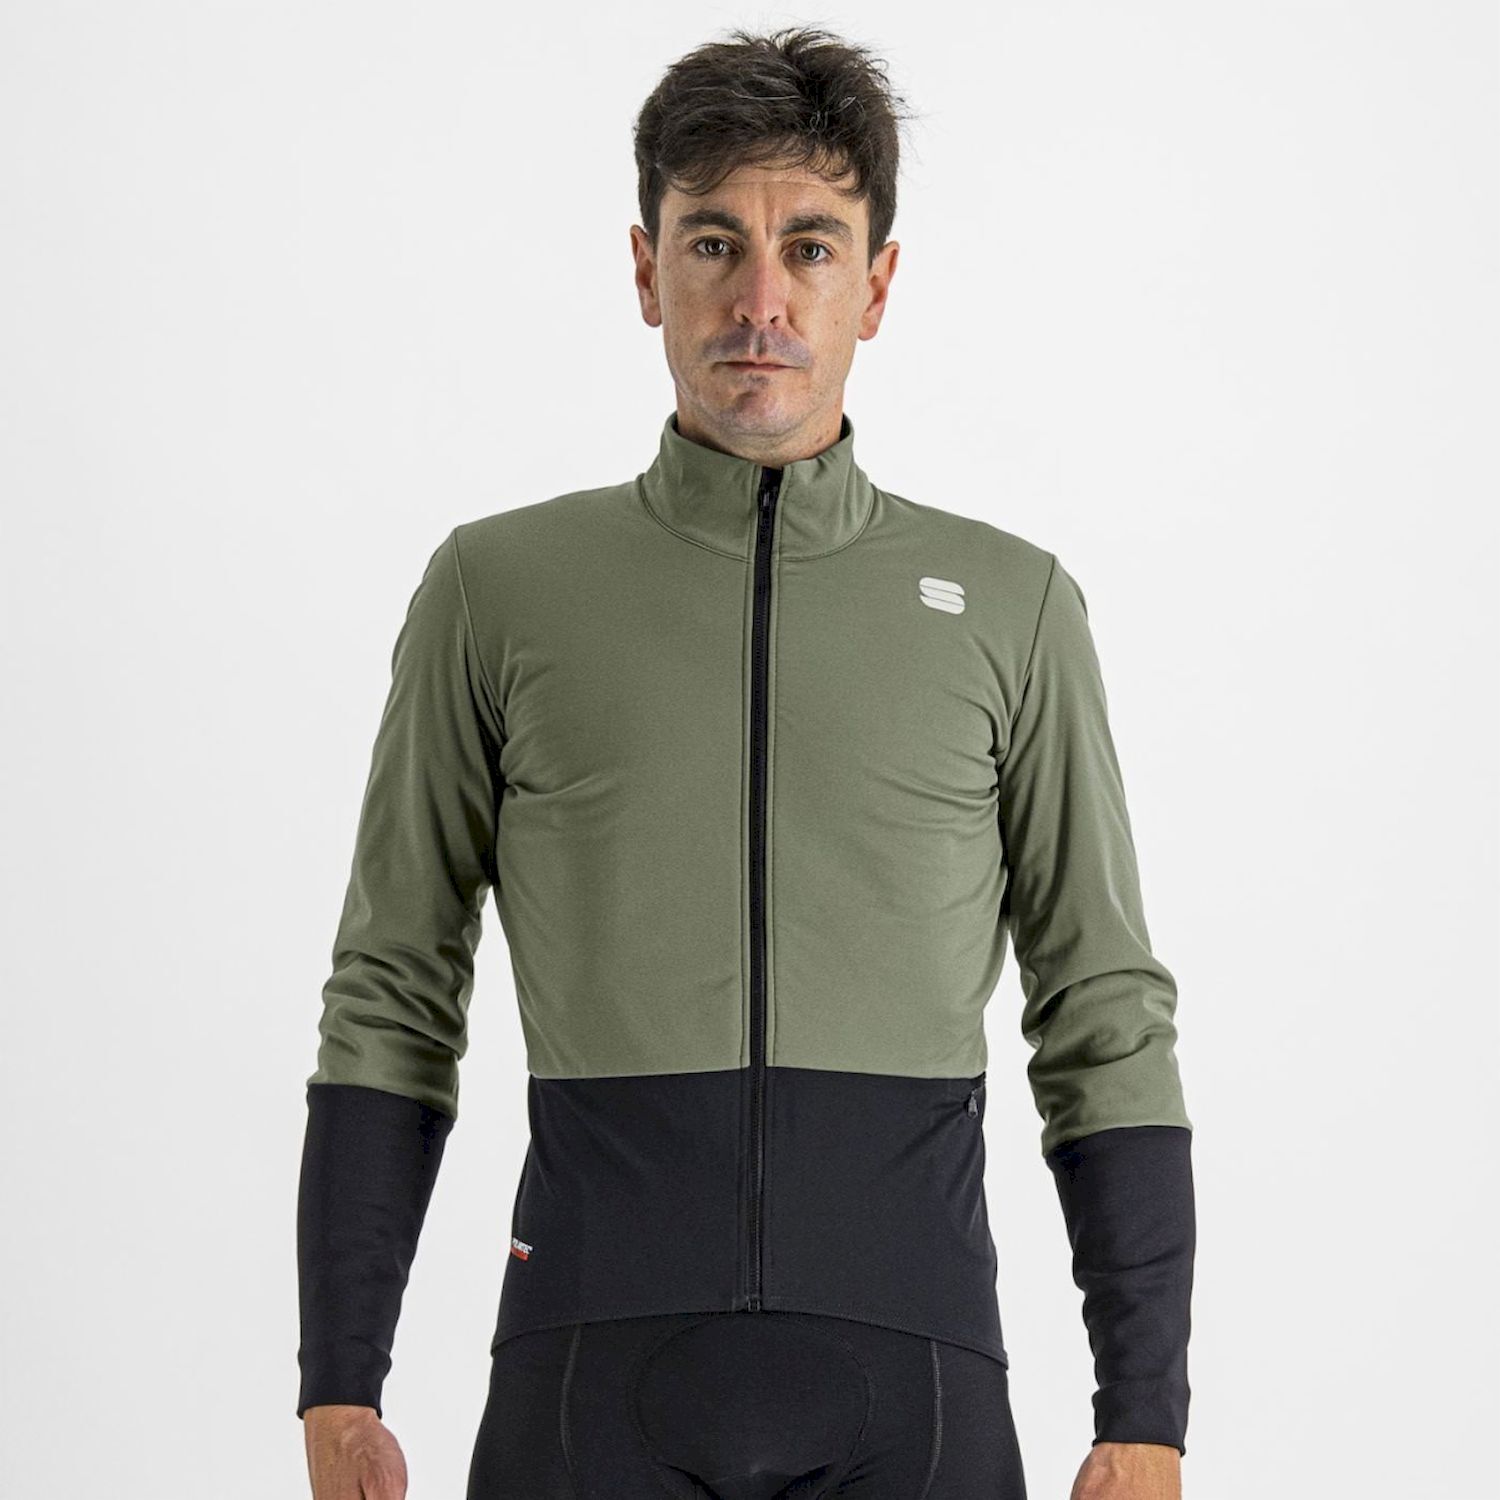 Sportful Total Comfort Jacket - Chaqueta ciclismo - Hombre